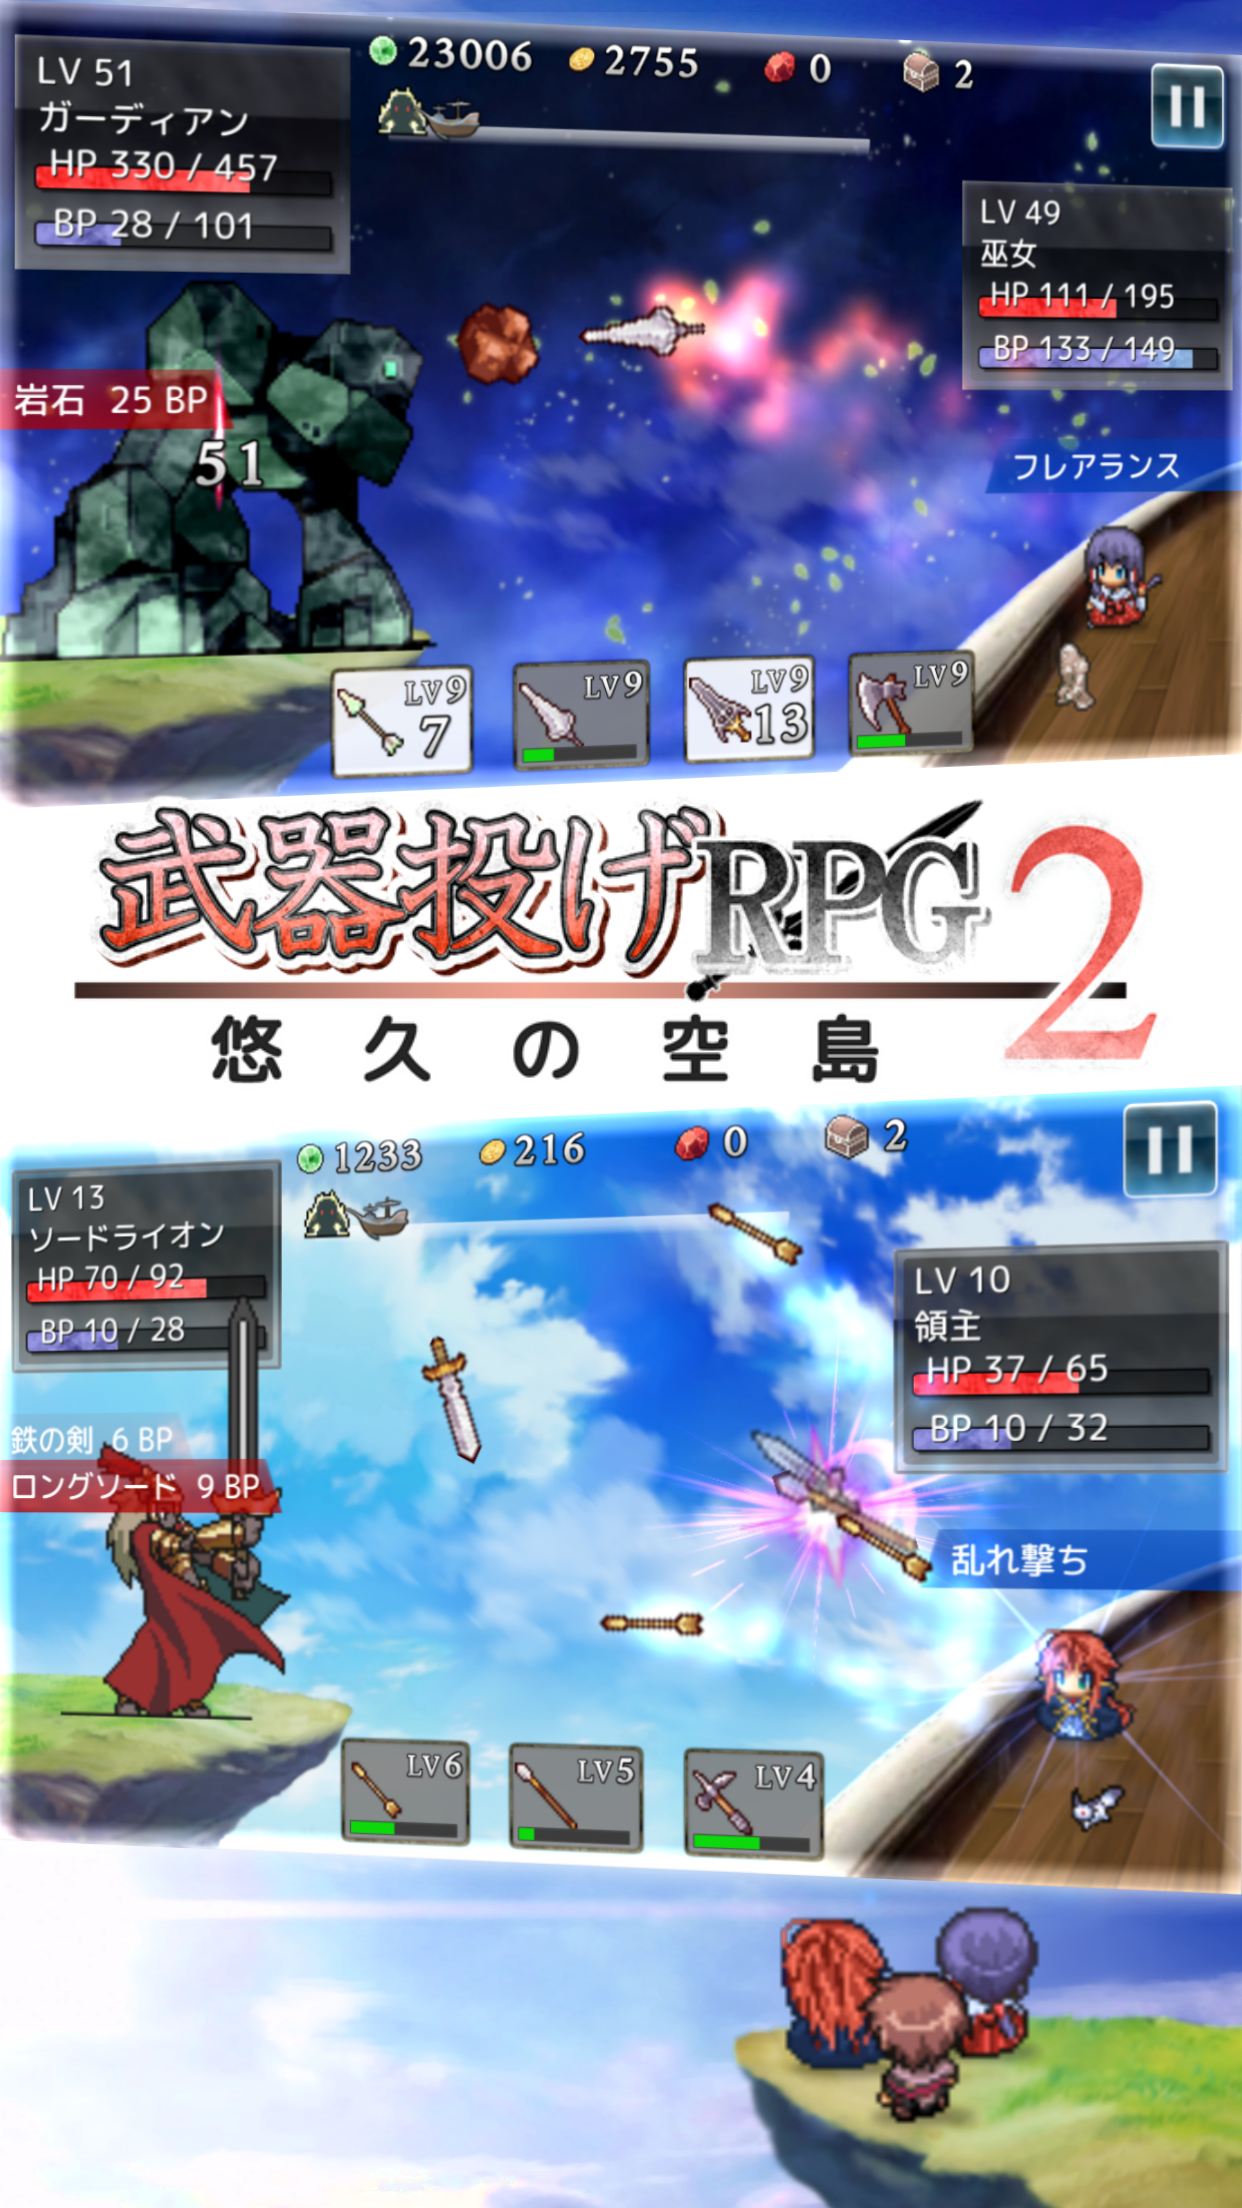 Screenshot 1 of Weapon Throwing RPG2 Eternal Sky Island 1.1.4